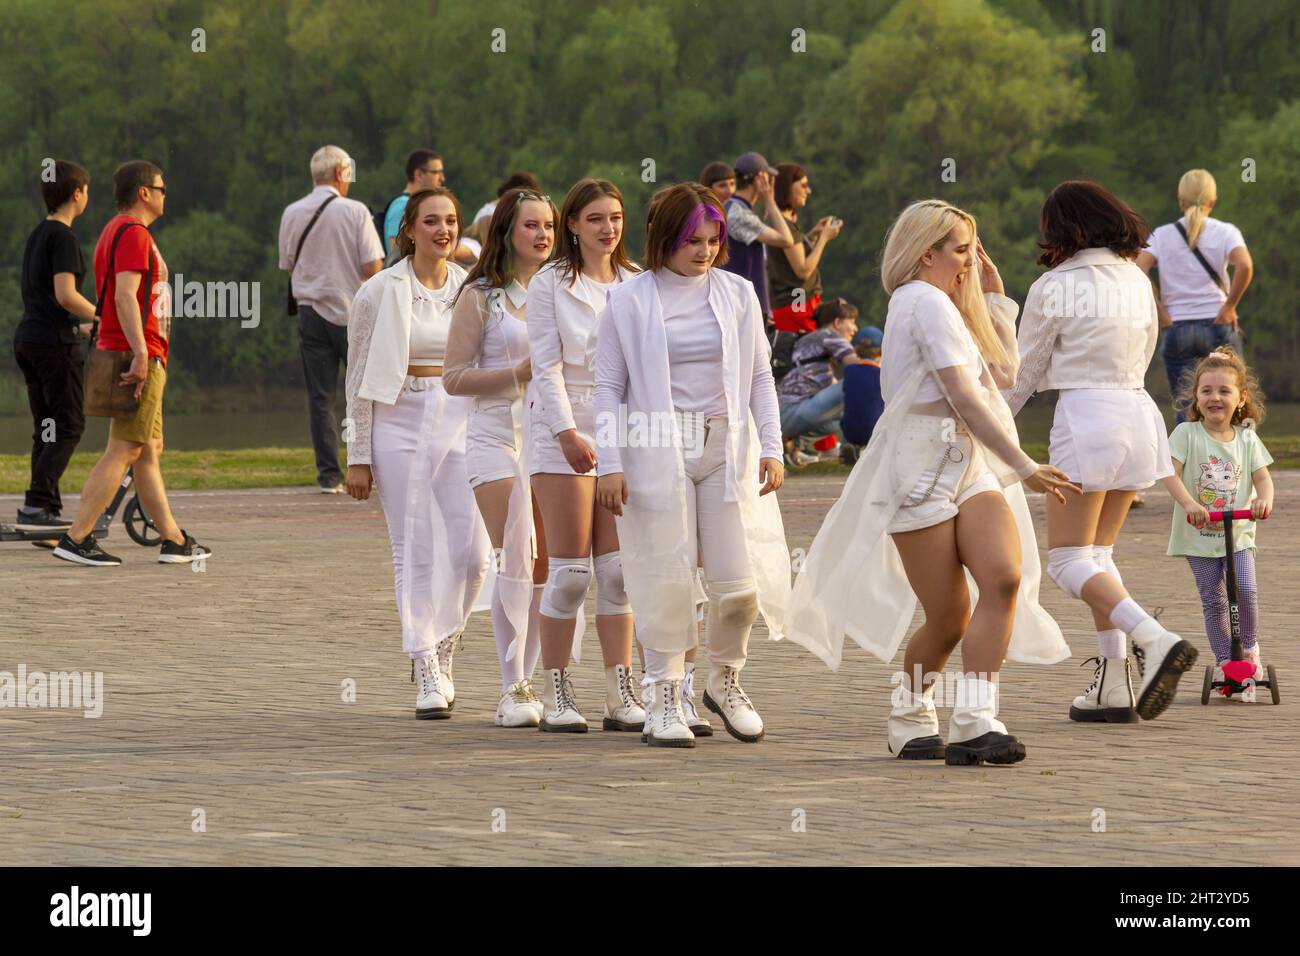 Omsk, Russie. 9 mai 2021. Préparation à la danse de masse en flash. Un groupe de filles en vêtements blancs a répété leur danse. Banque D'Images